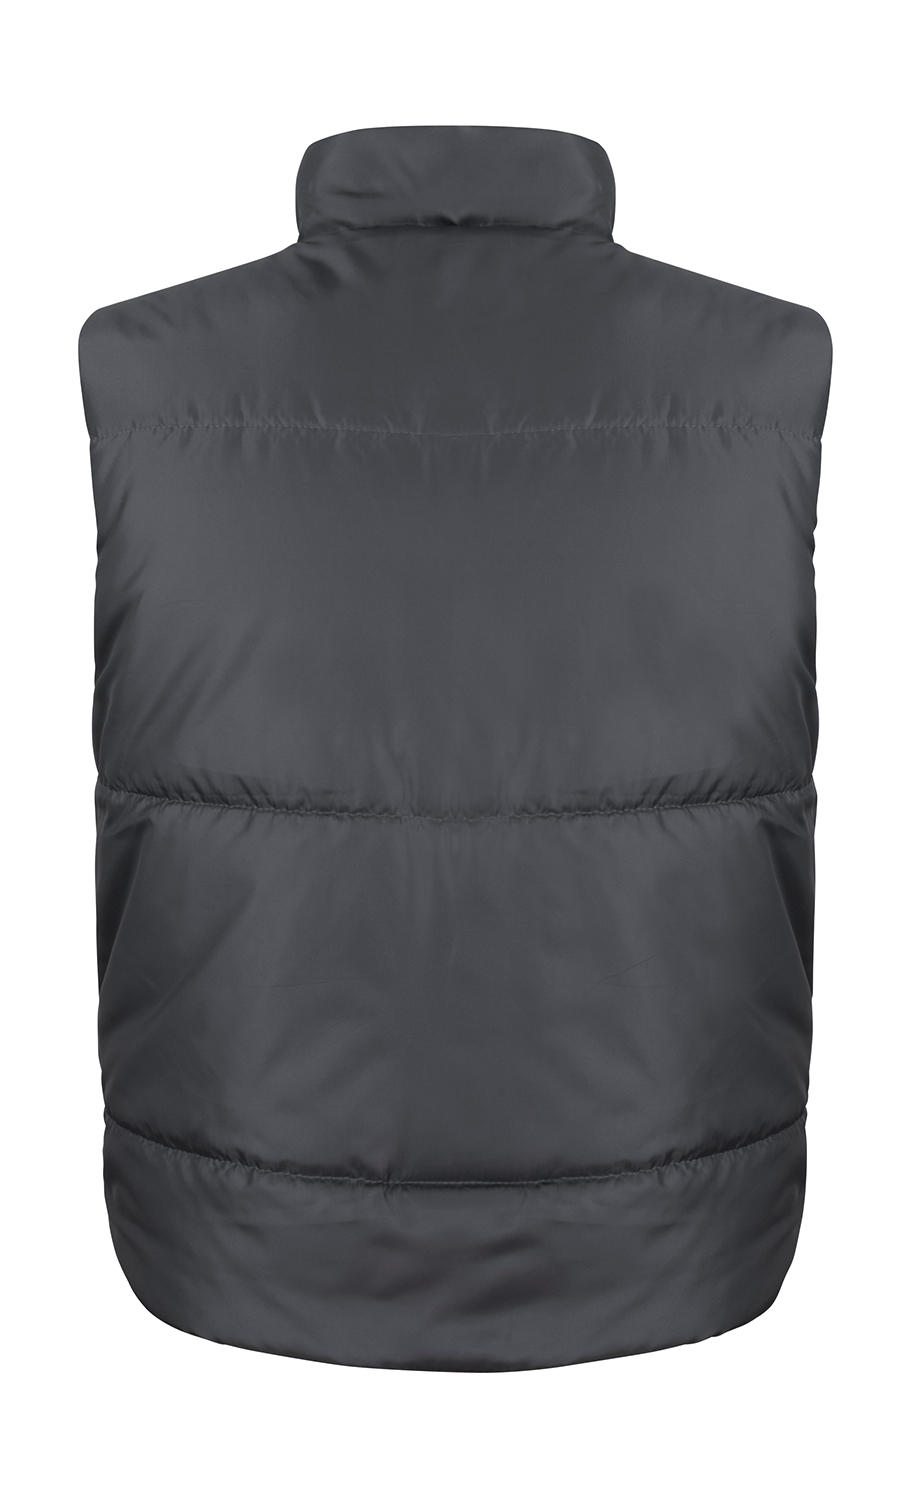  Fleece Lined Bodywarmer in Farbe Black